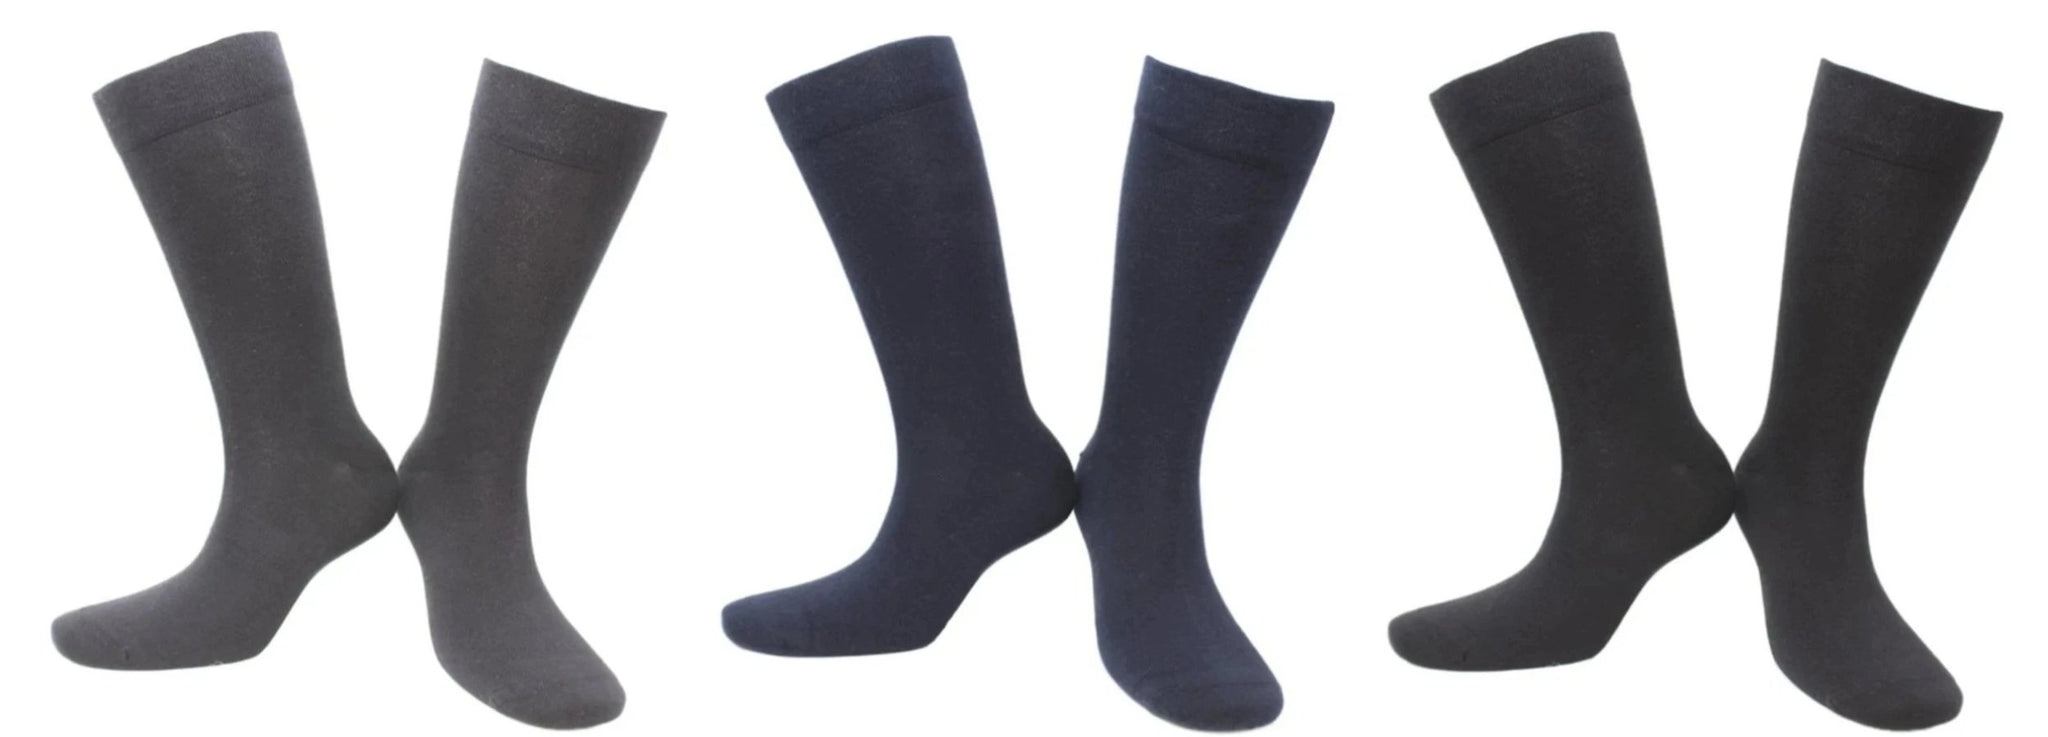 marine boot socks